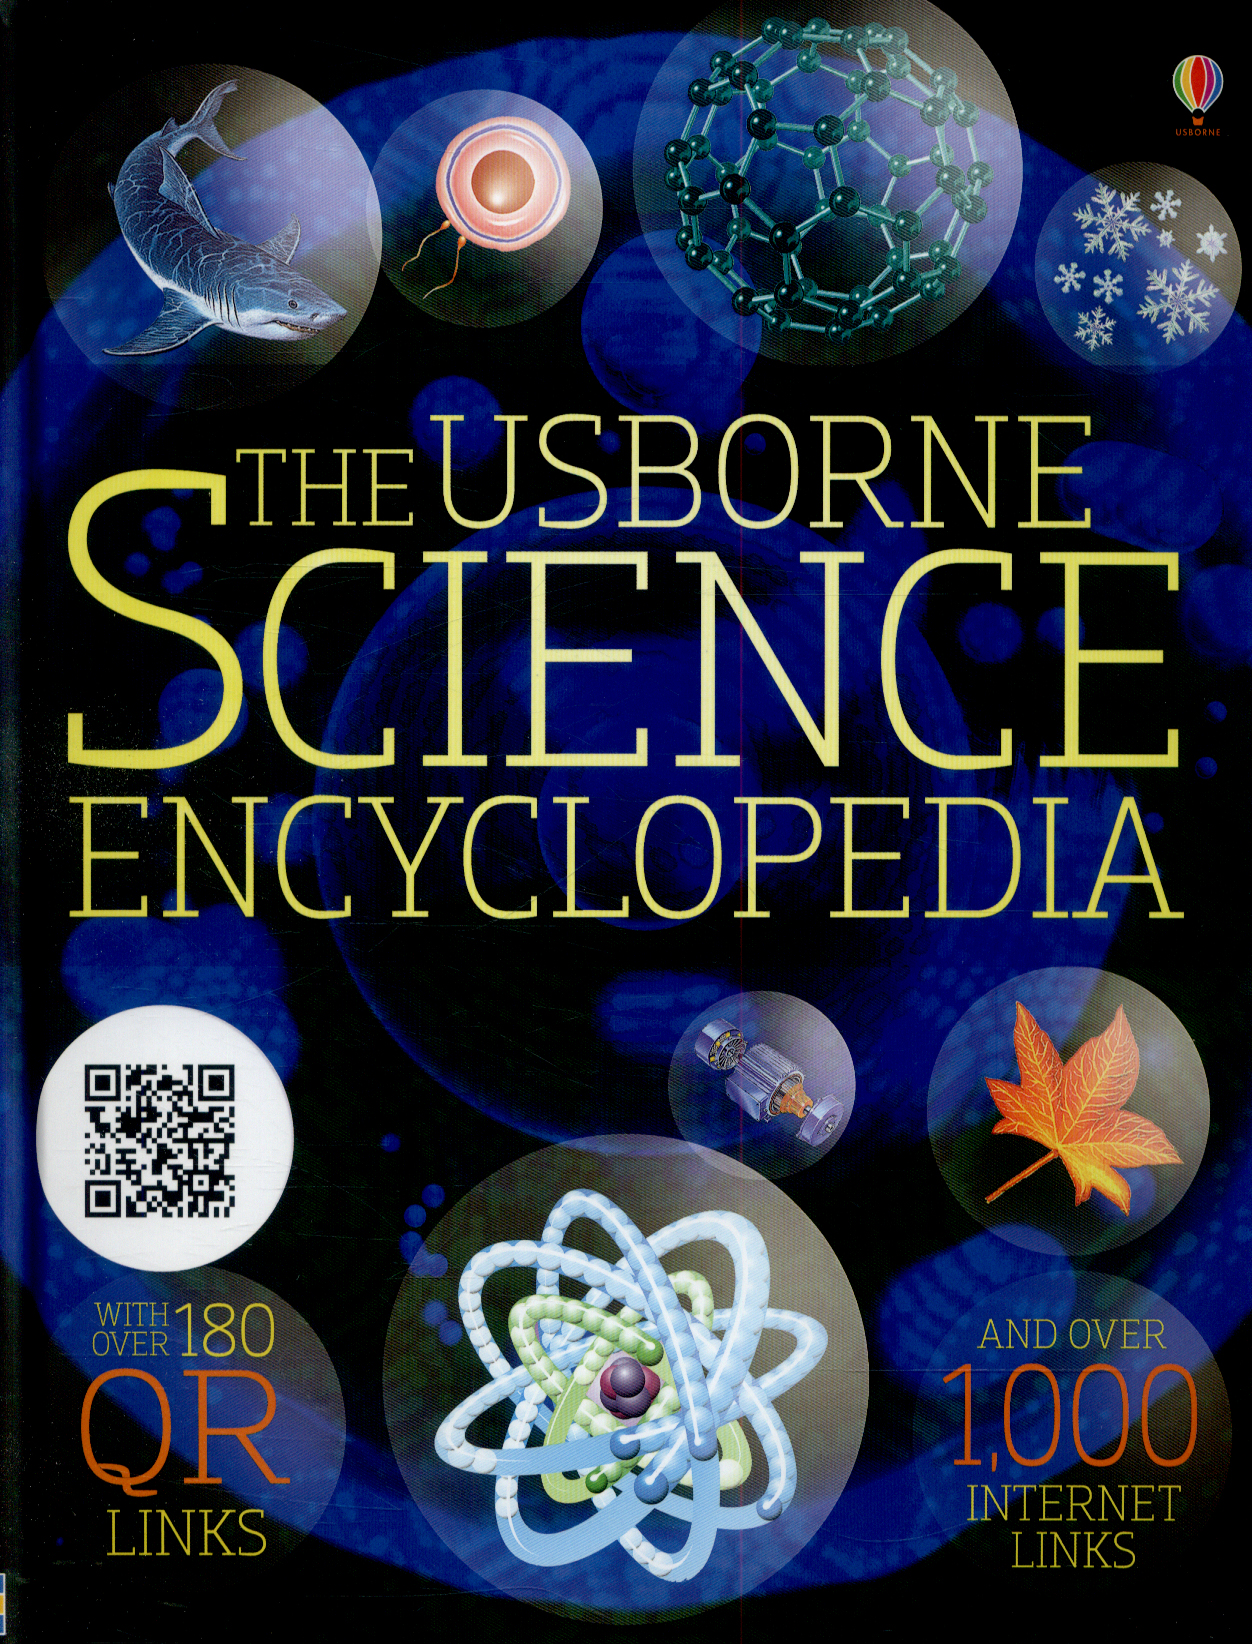 Science Encyclopedia - Kirsteen Robson